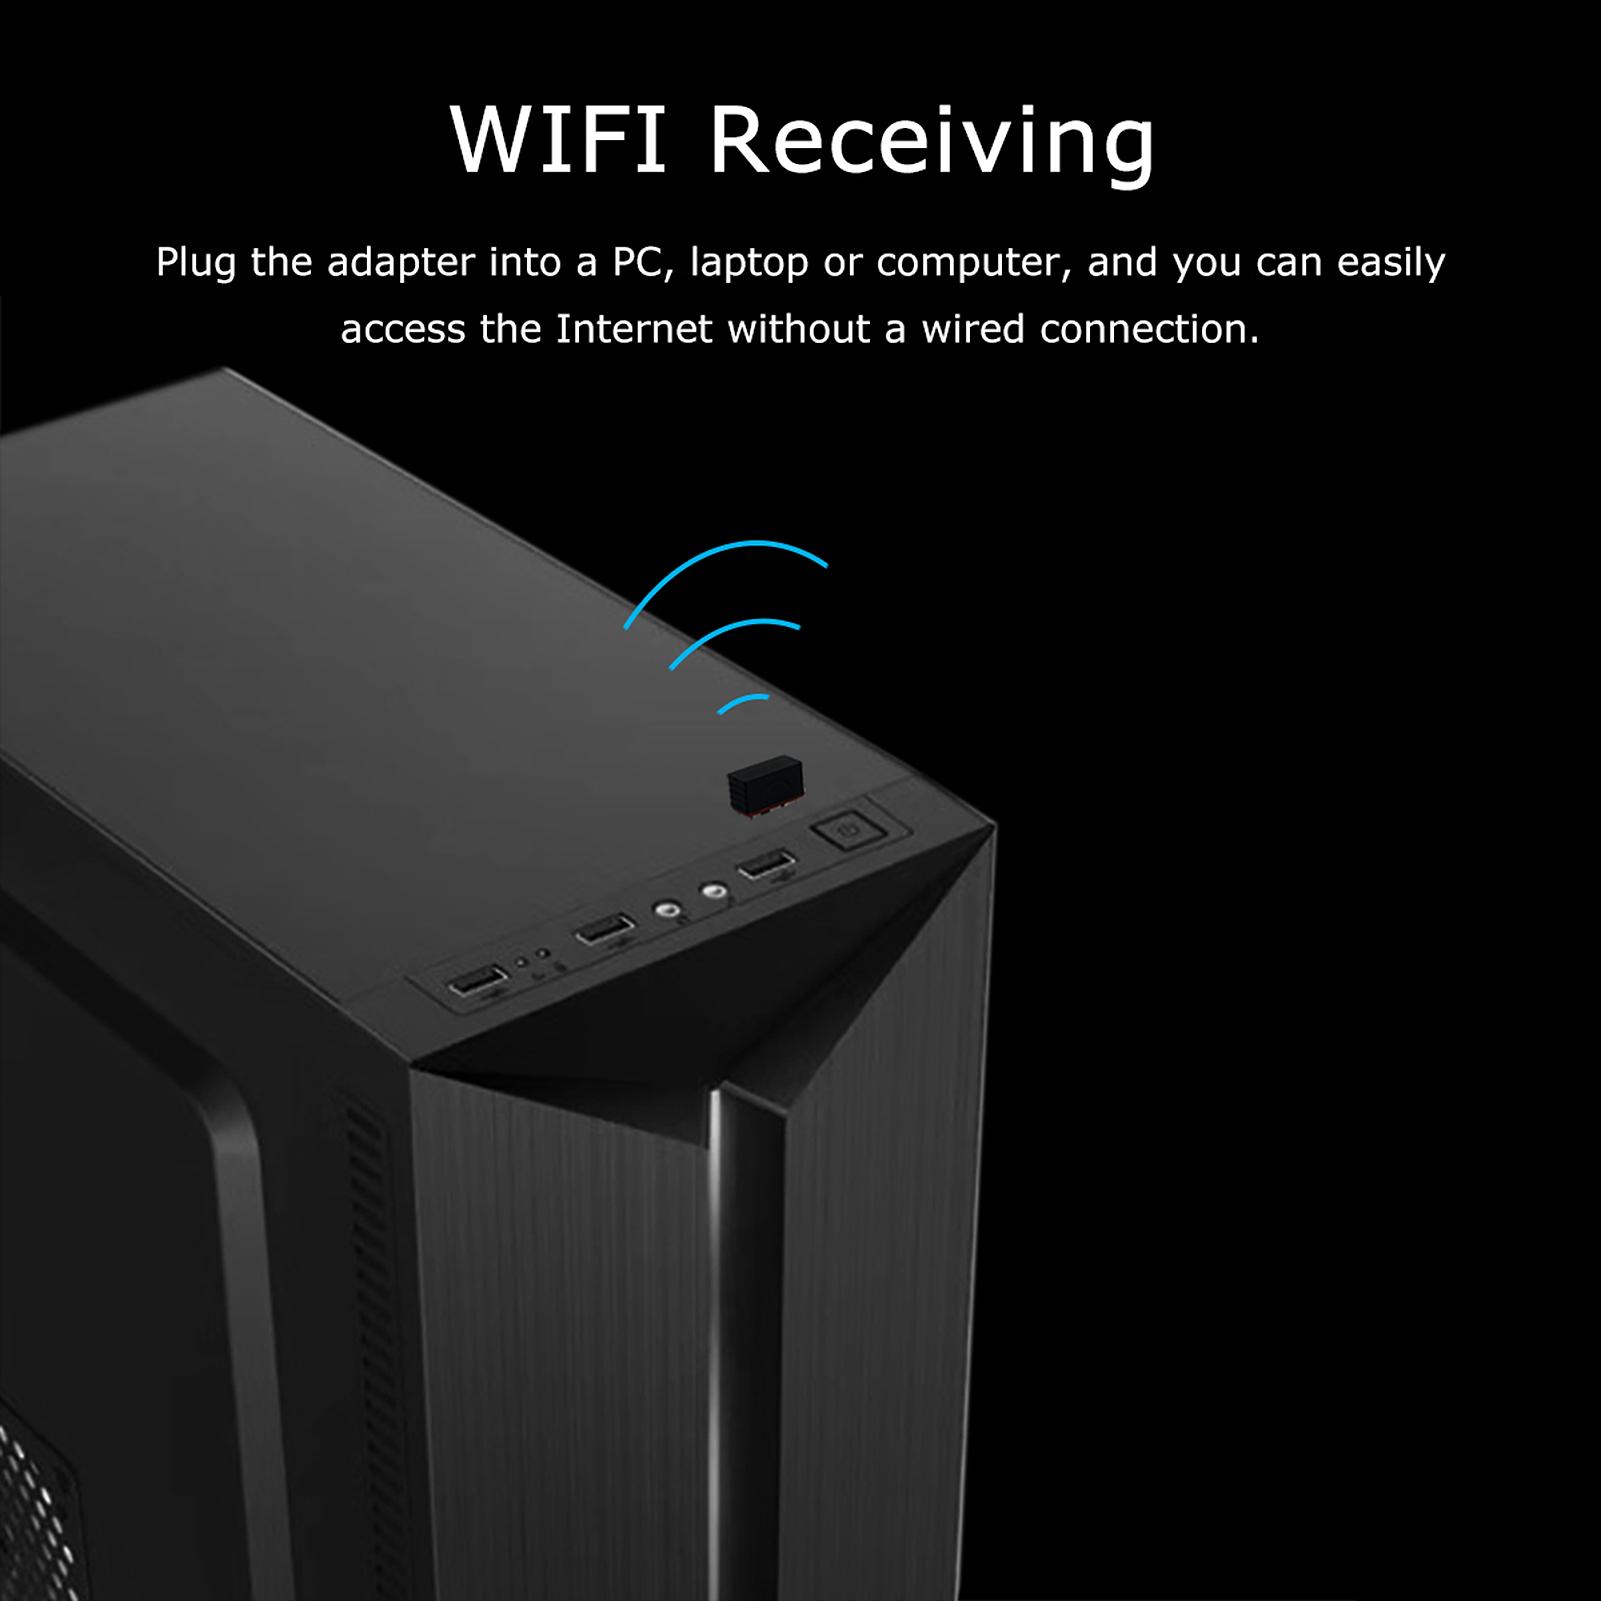 WIFI 6 Thu Tín Hiệu Mạng Mini Bộ Chuyển Đổi Wi-Fi Không Trình Điều Khiển Cho Máy Tính Để Bàn Máy Tính Card Mạng 2.4G Cắm USB